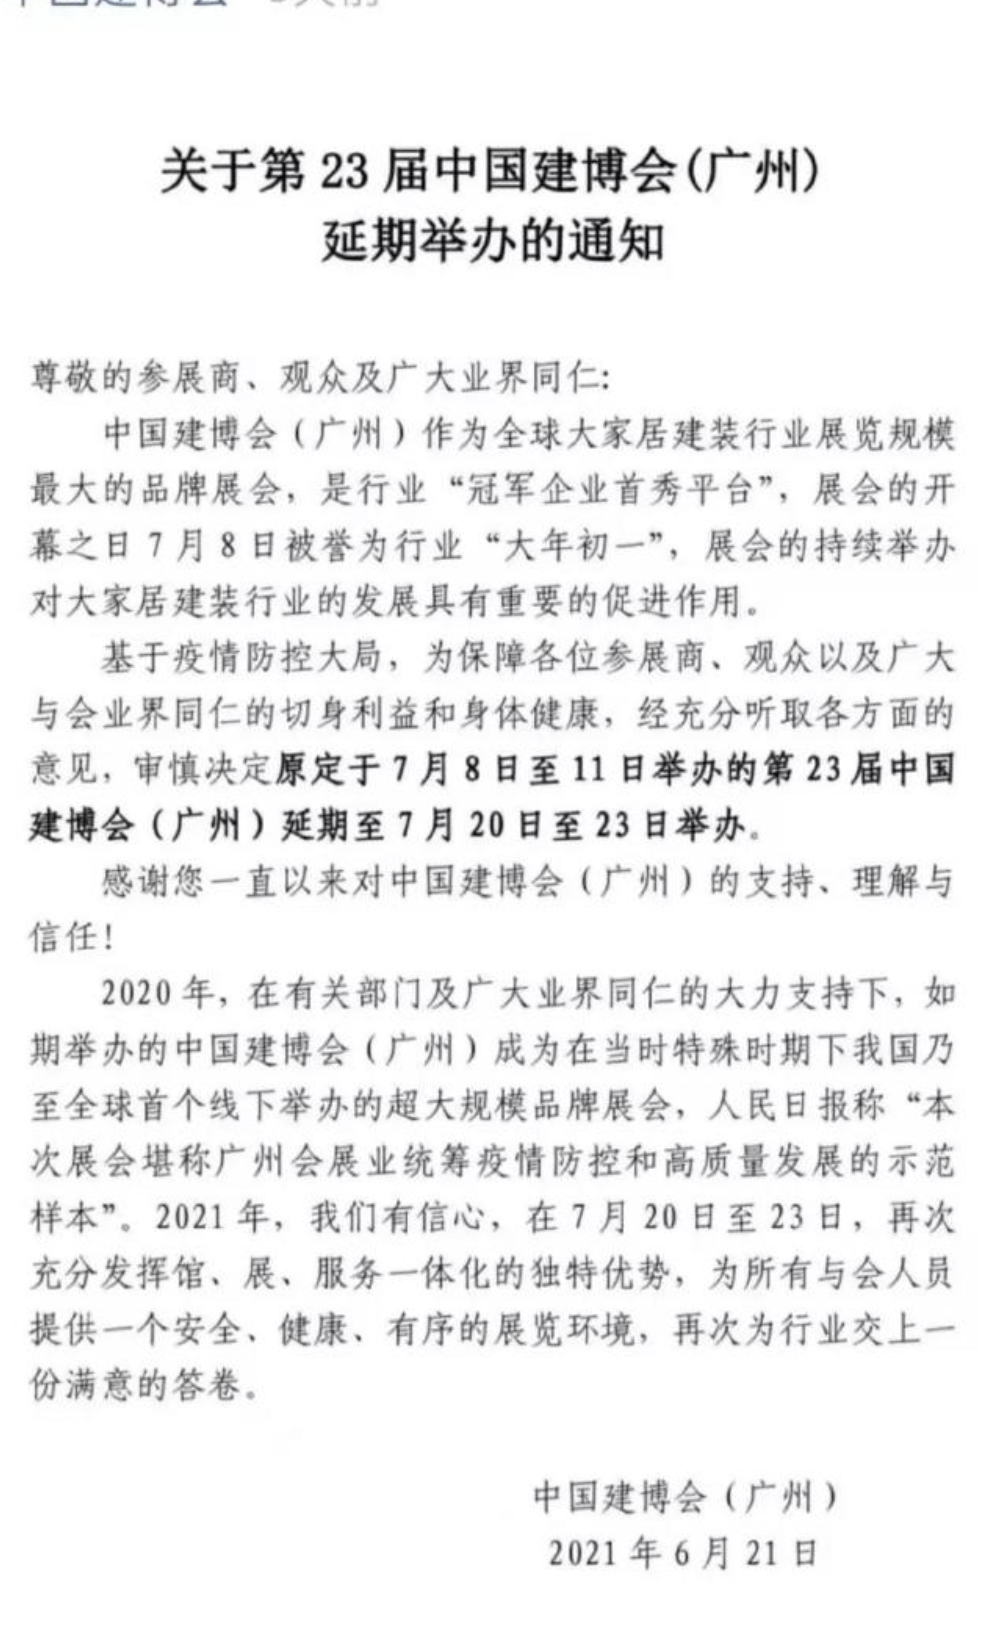 2021年广州建博会将于7月20日至23日举办